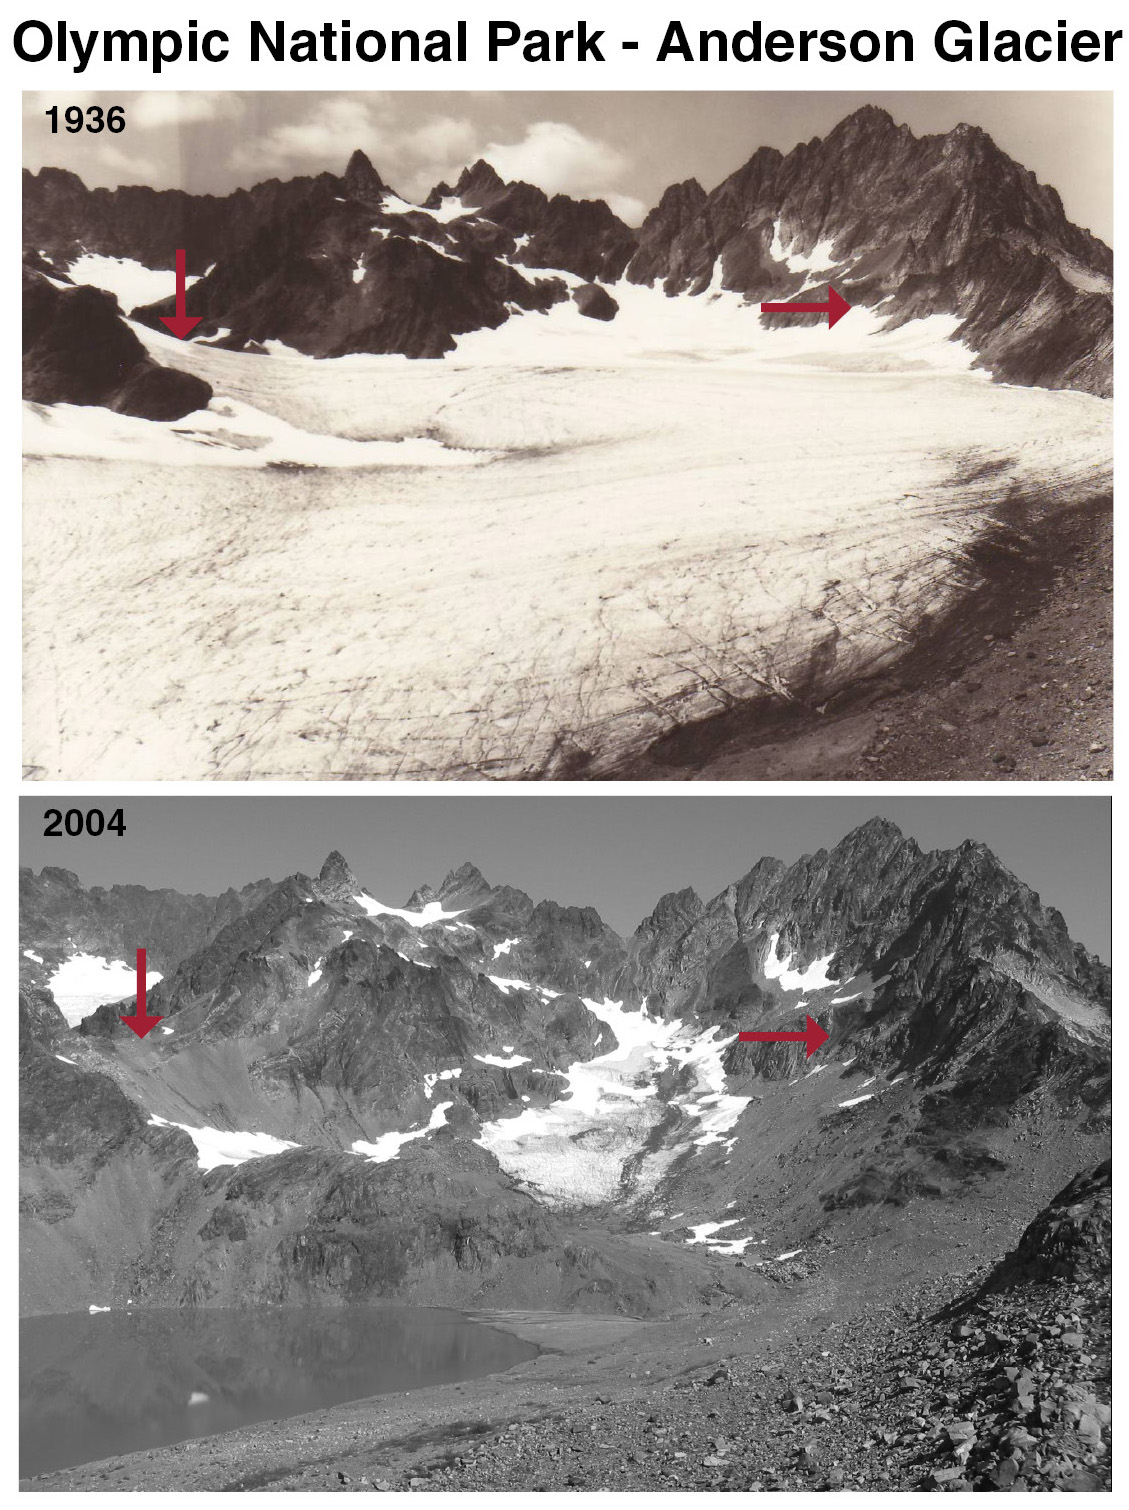 Anderson Glacier 1936-2004 pair